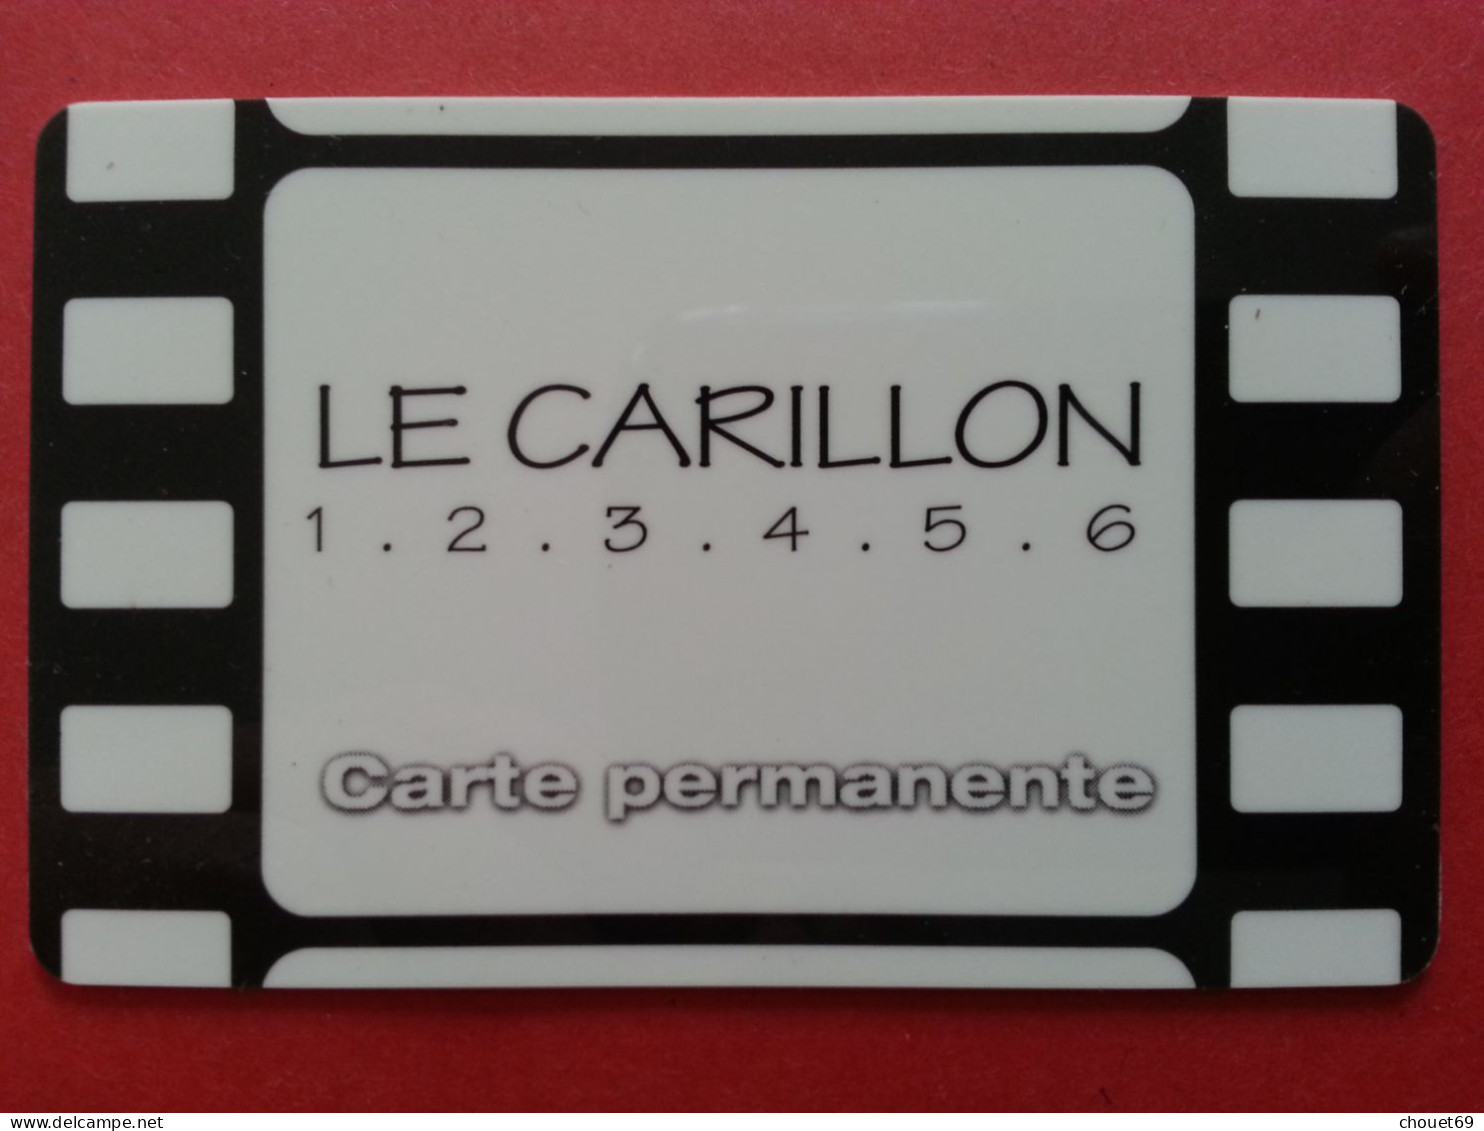 Cinécarte Le Carillon Carte Permanente 1.2.3.4.5.6 (BH0621 - Biglietti Cinema